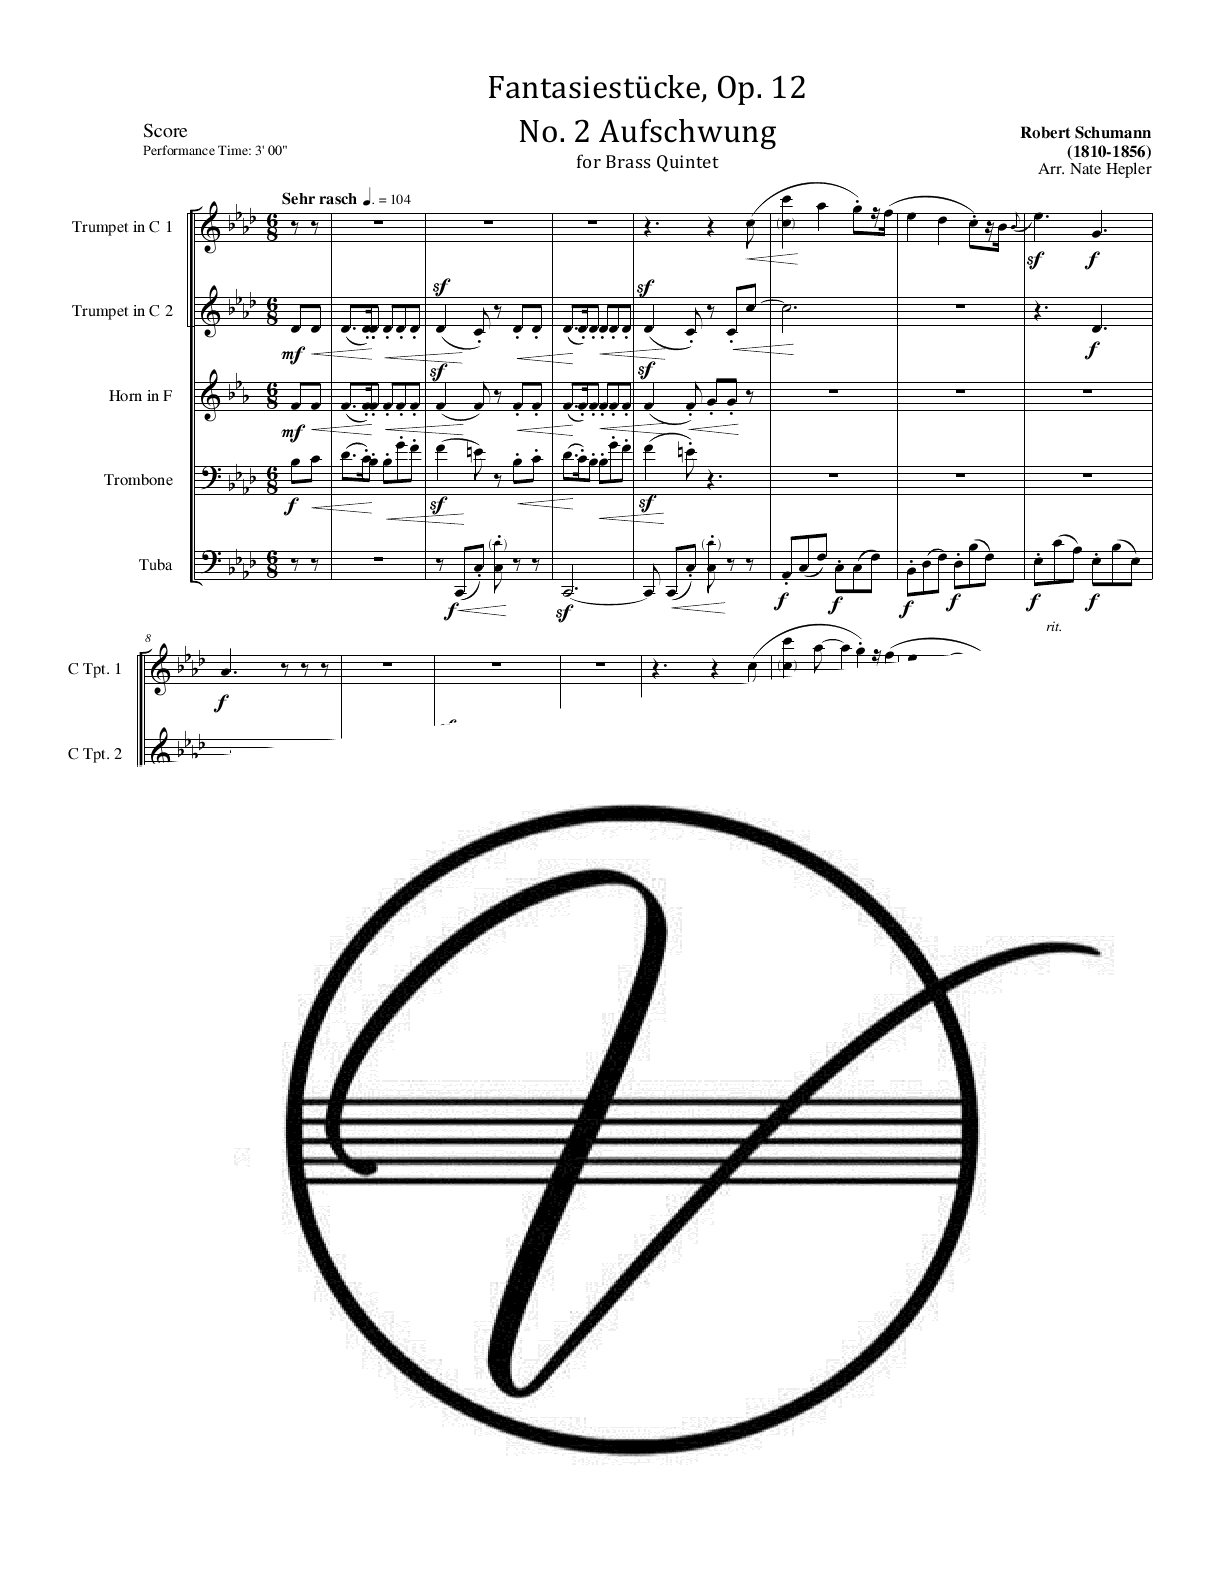 Schumann - Fantasiestucke, Op. 12, No. 2 - Aufschwung (BQ)